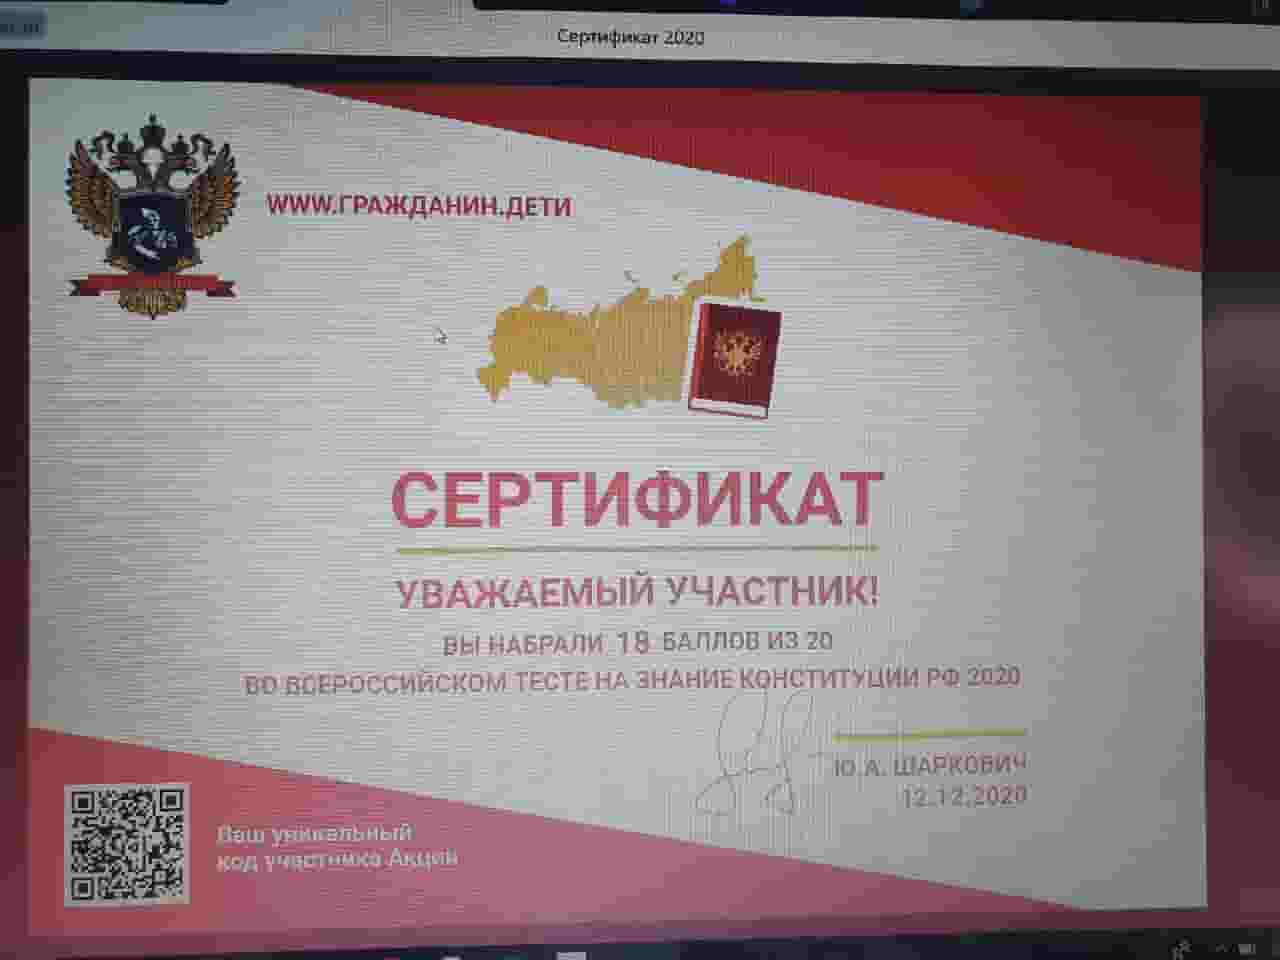 Сертификат на знание Конституции. Всероссийский тест на знание Конституции РФ.